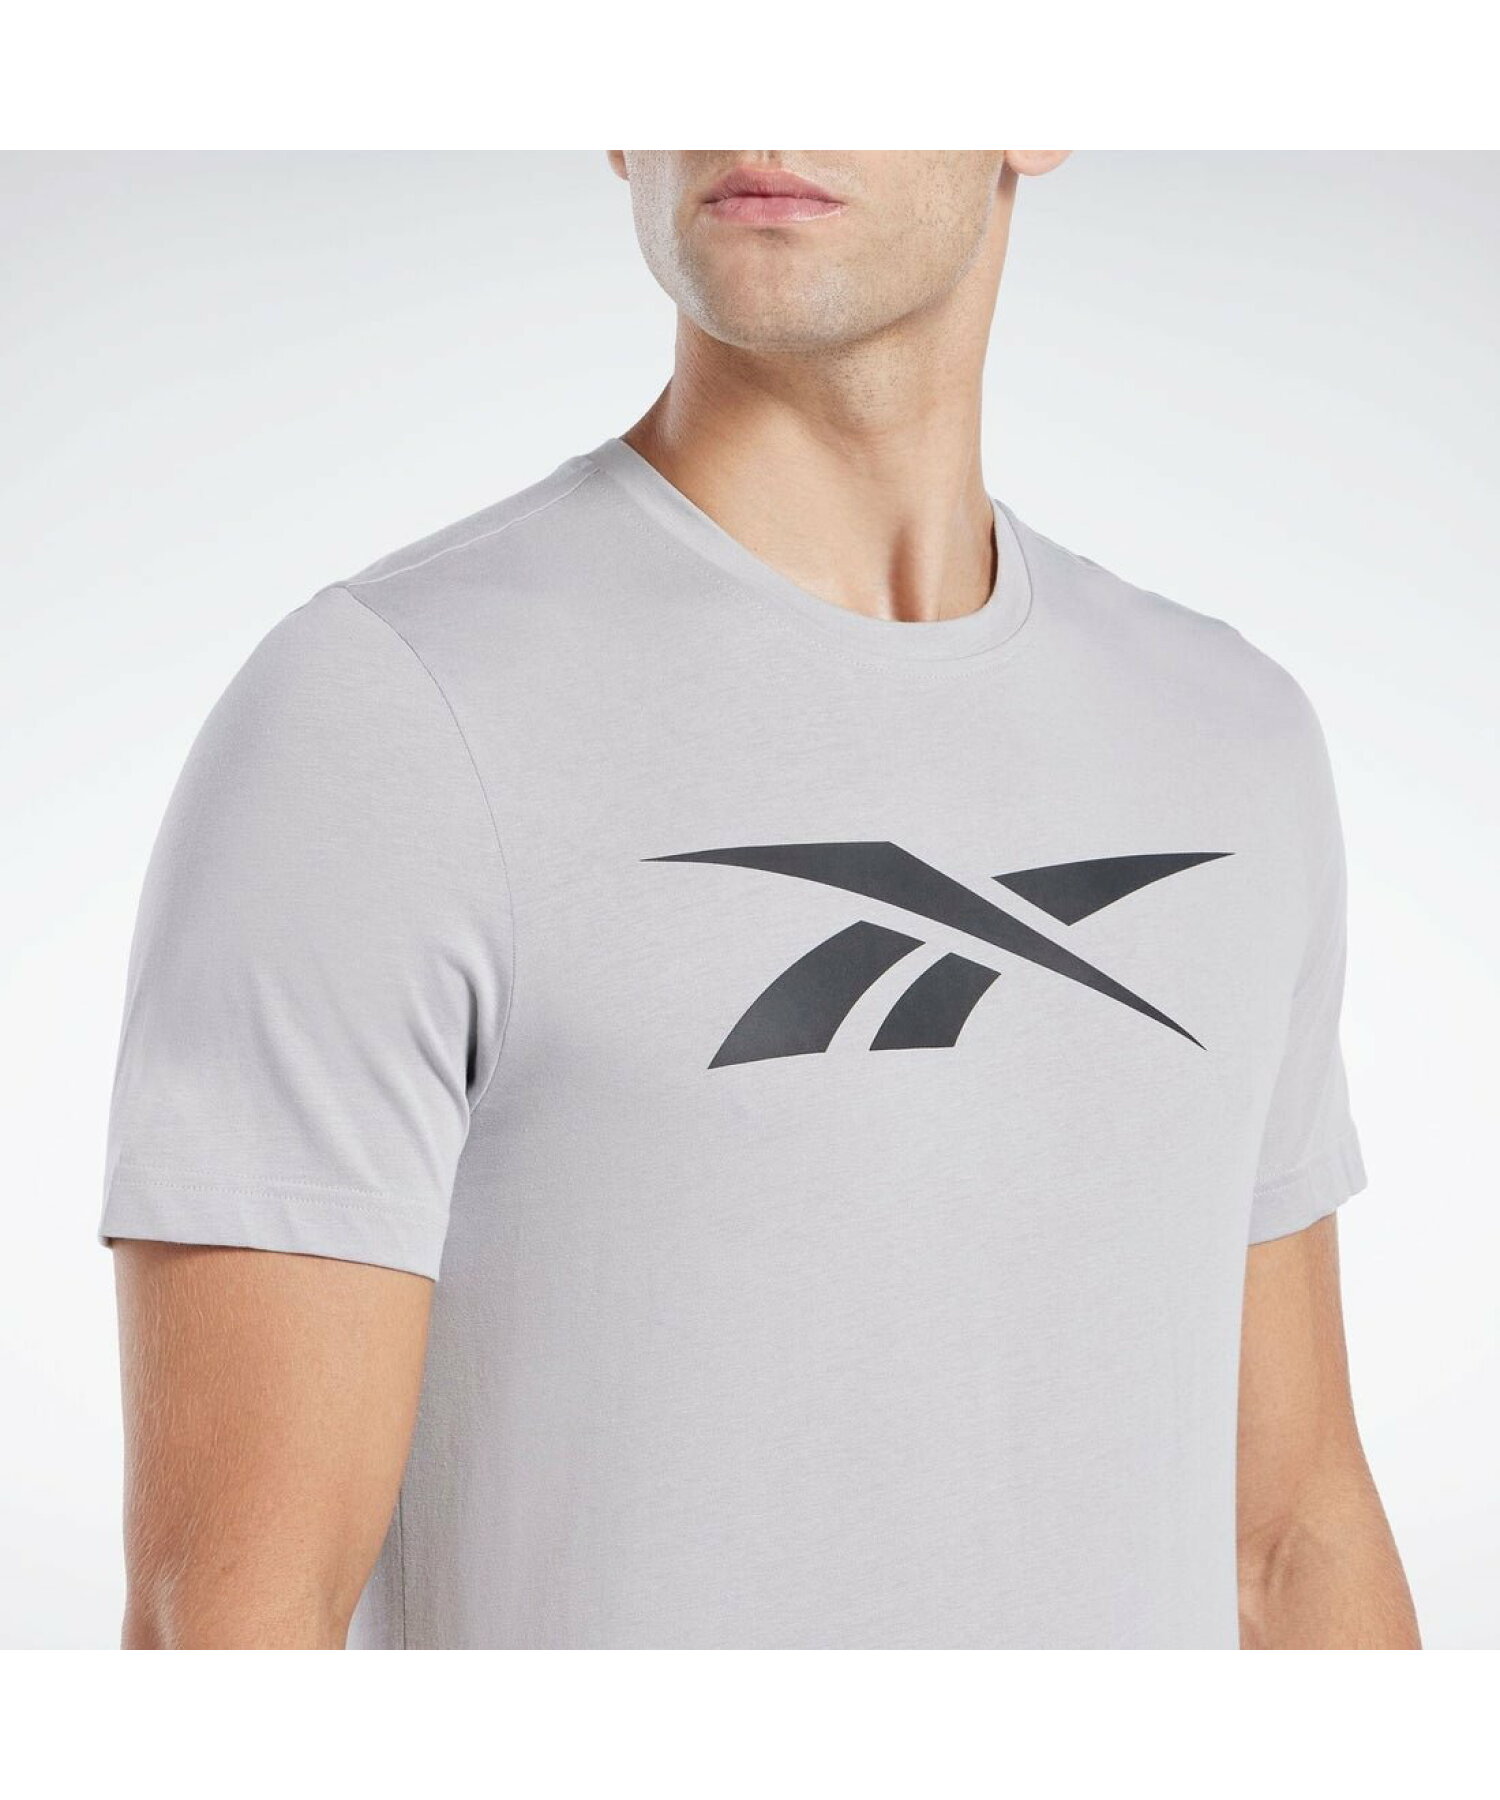 グラフィック シリーズ ベクター Tシャツ / Graphic Series Vector T-Shirt